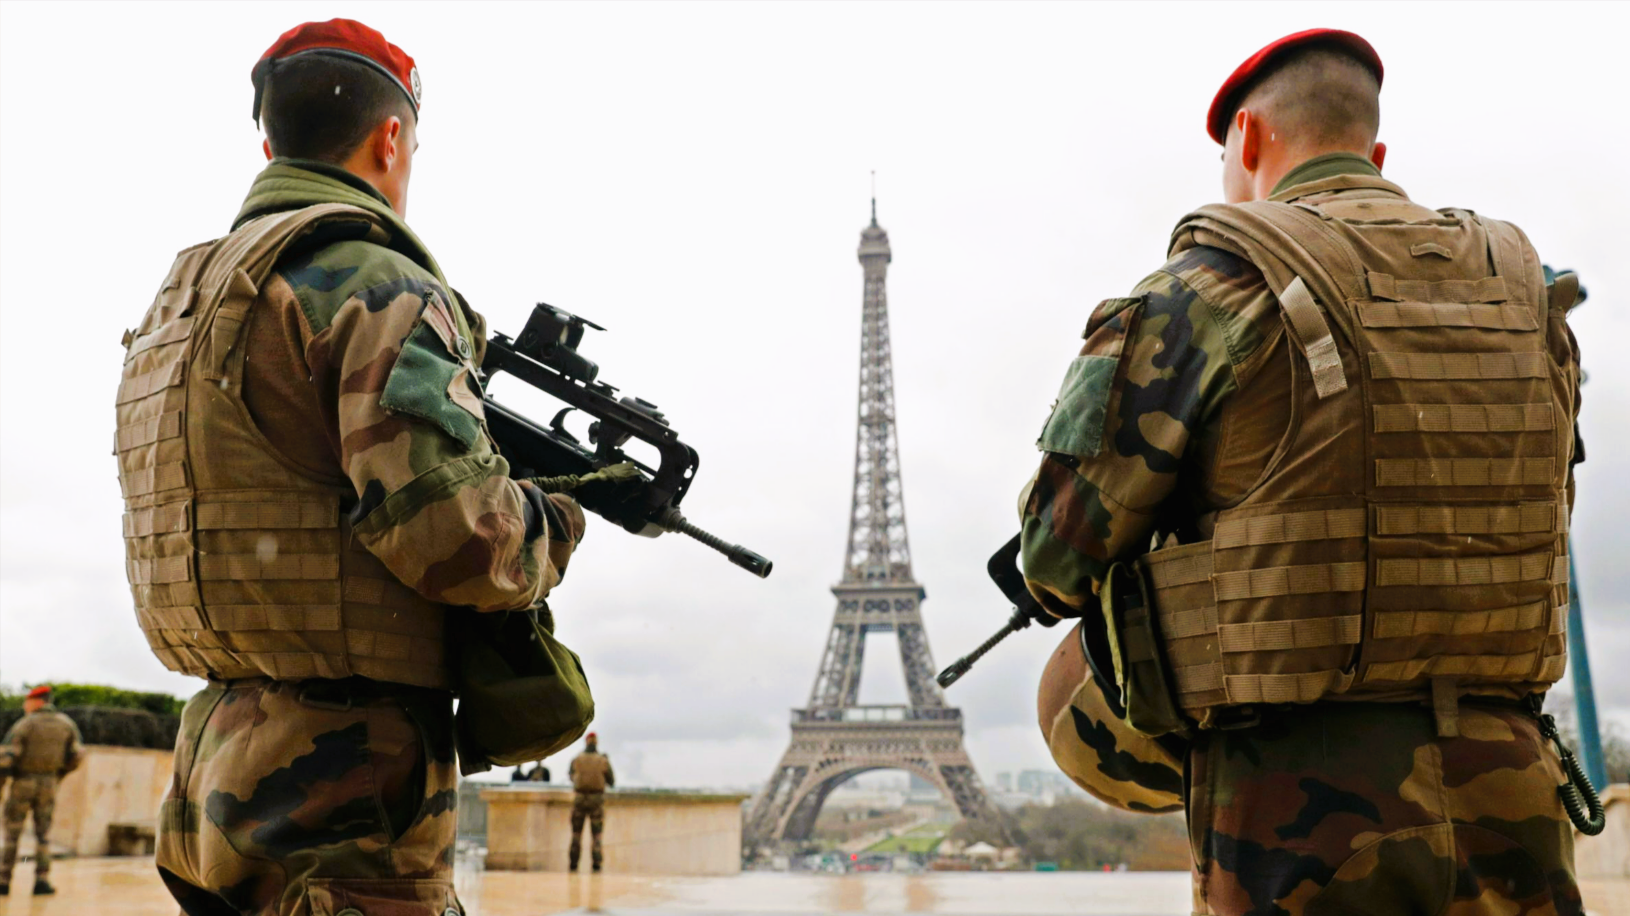 Terroralarm in Paris! ISIS-Attentäter wollte Notre Dame angreifen!